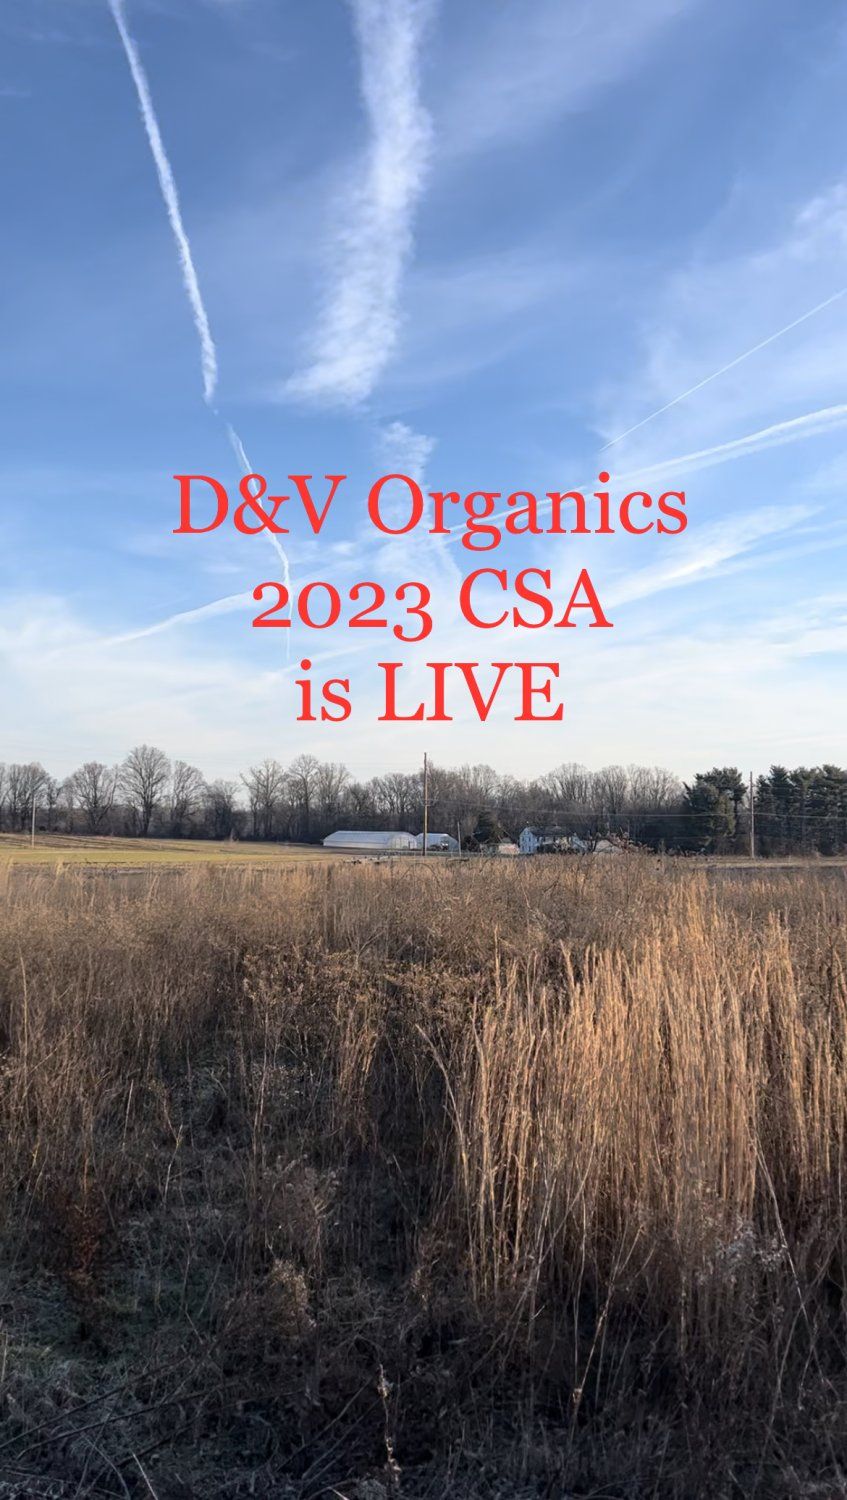 Next Happening: D&V Organics 2023 CSA is Now Open